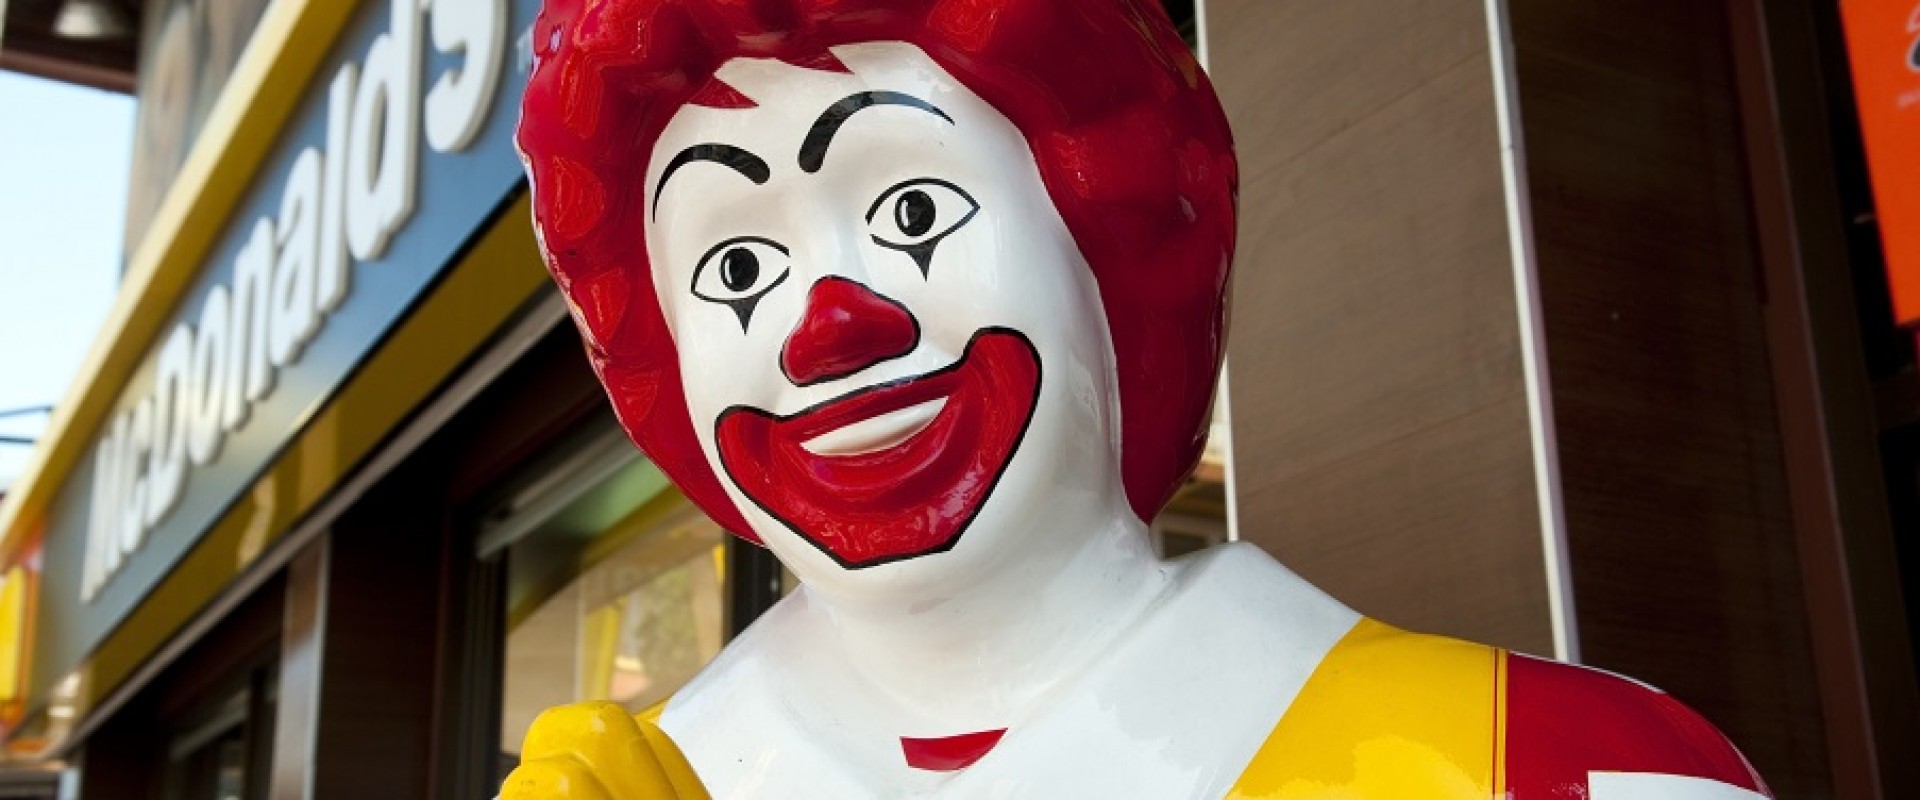 Окончательный уход McDonald's из России и другие новости 16 мая